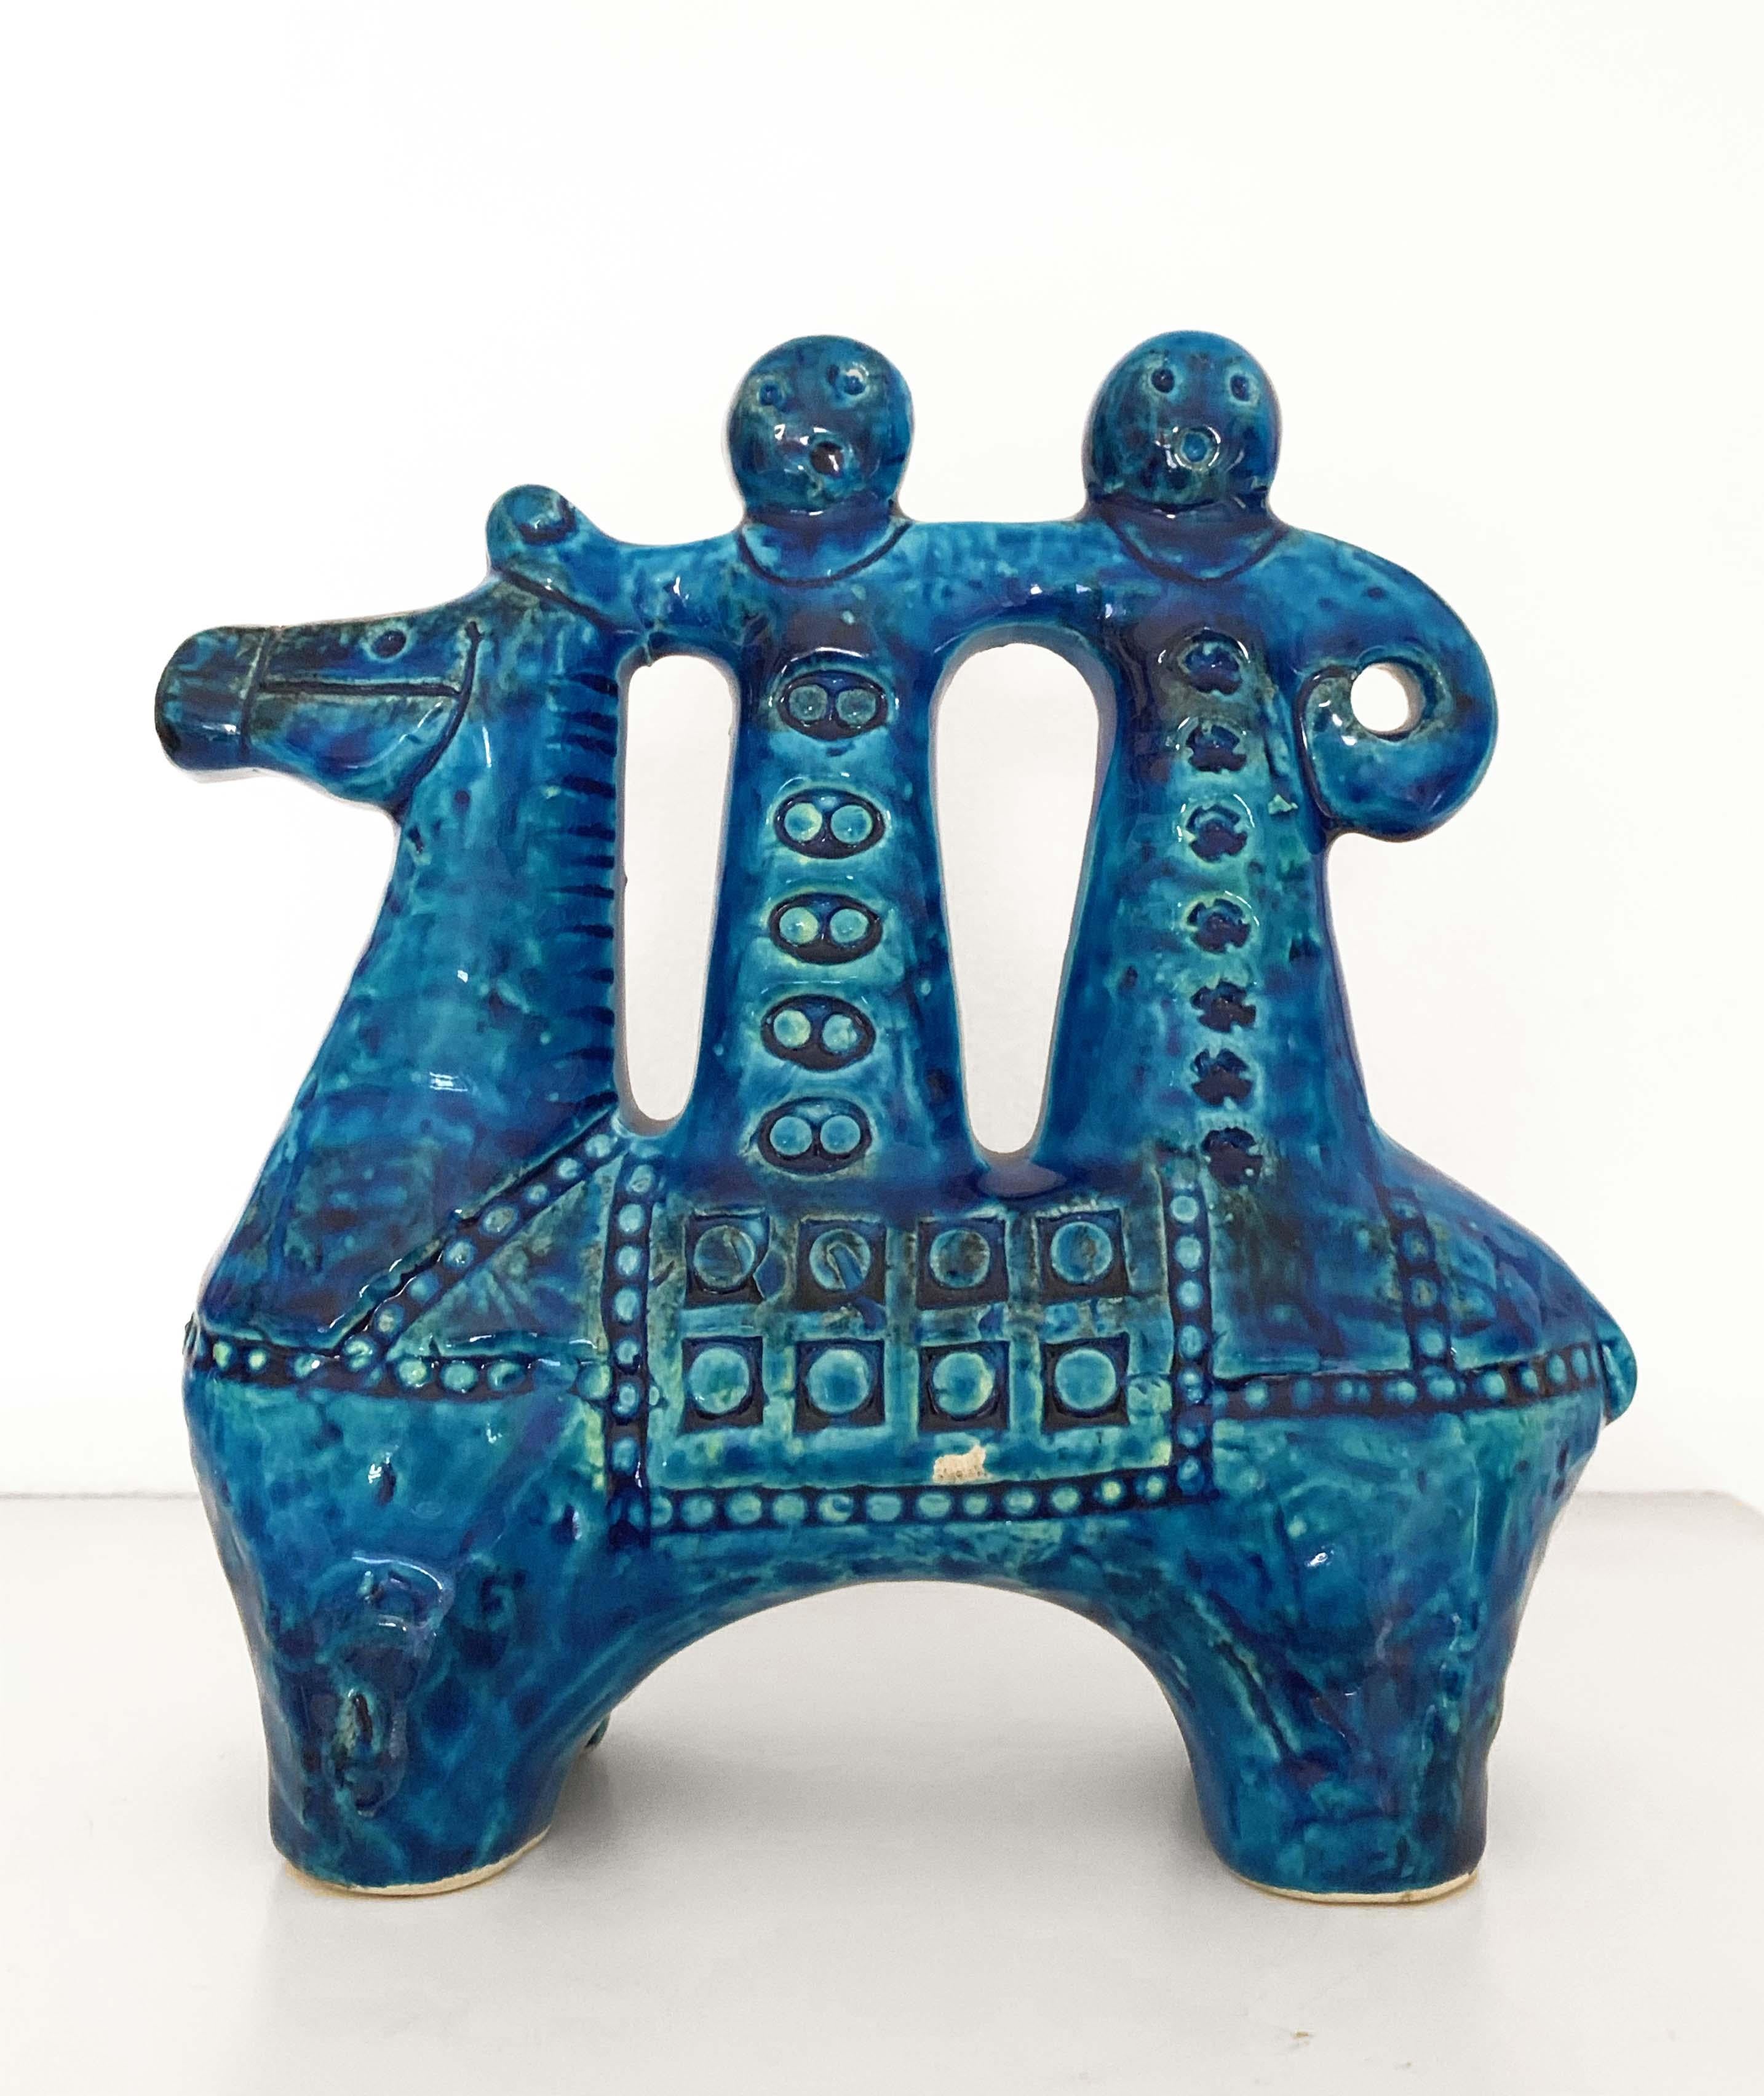 Ceramic Aldo Londi for Bitossi Rimini Blue Figurine, Horse, Rider, Cavallerizzo Pottery